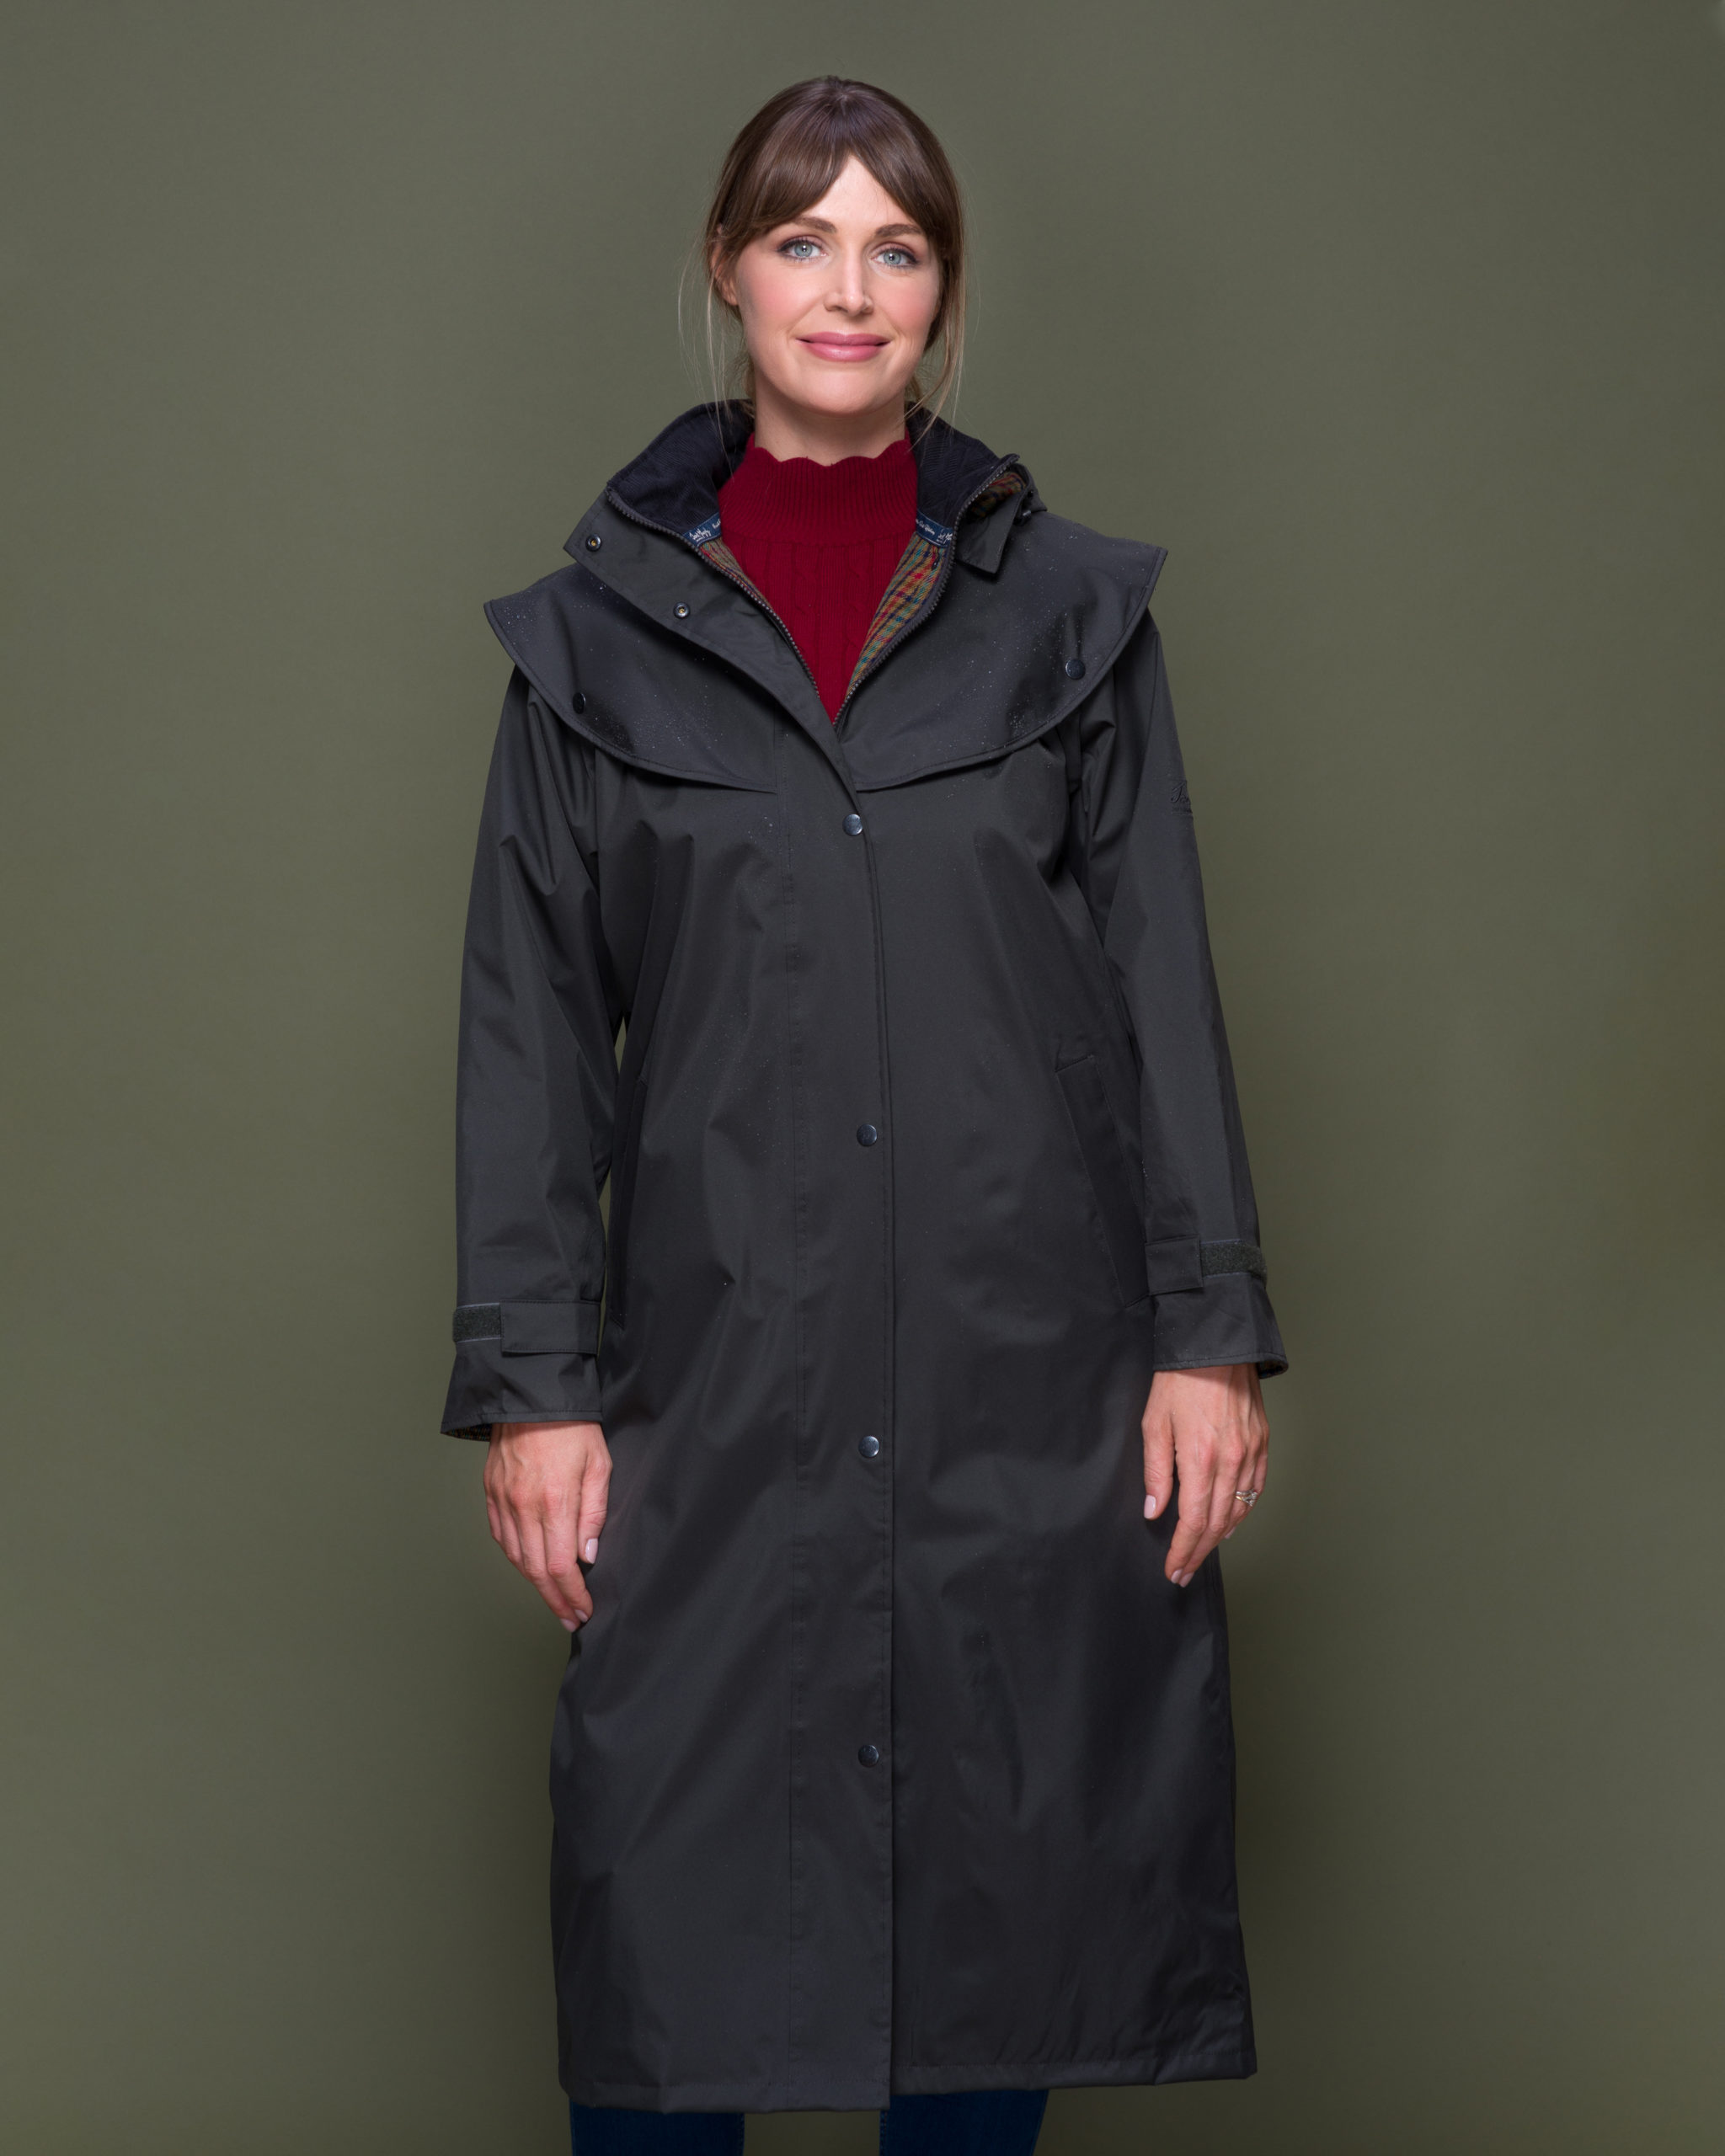 Ladies' Waterproof & Windproof Long Coat with Detach Hood JACK MURPHY DEE